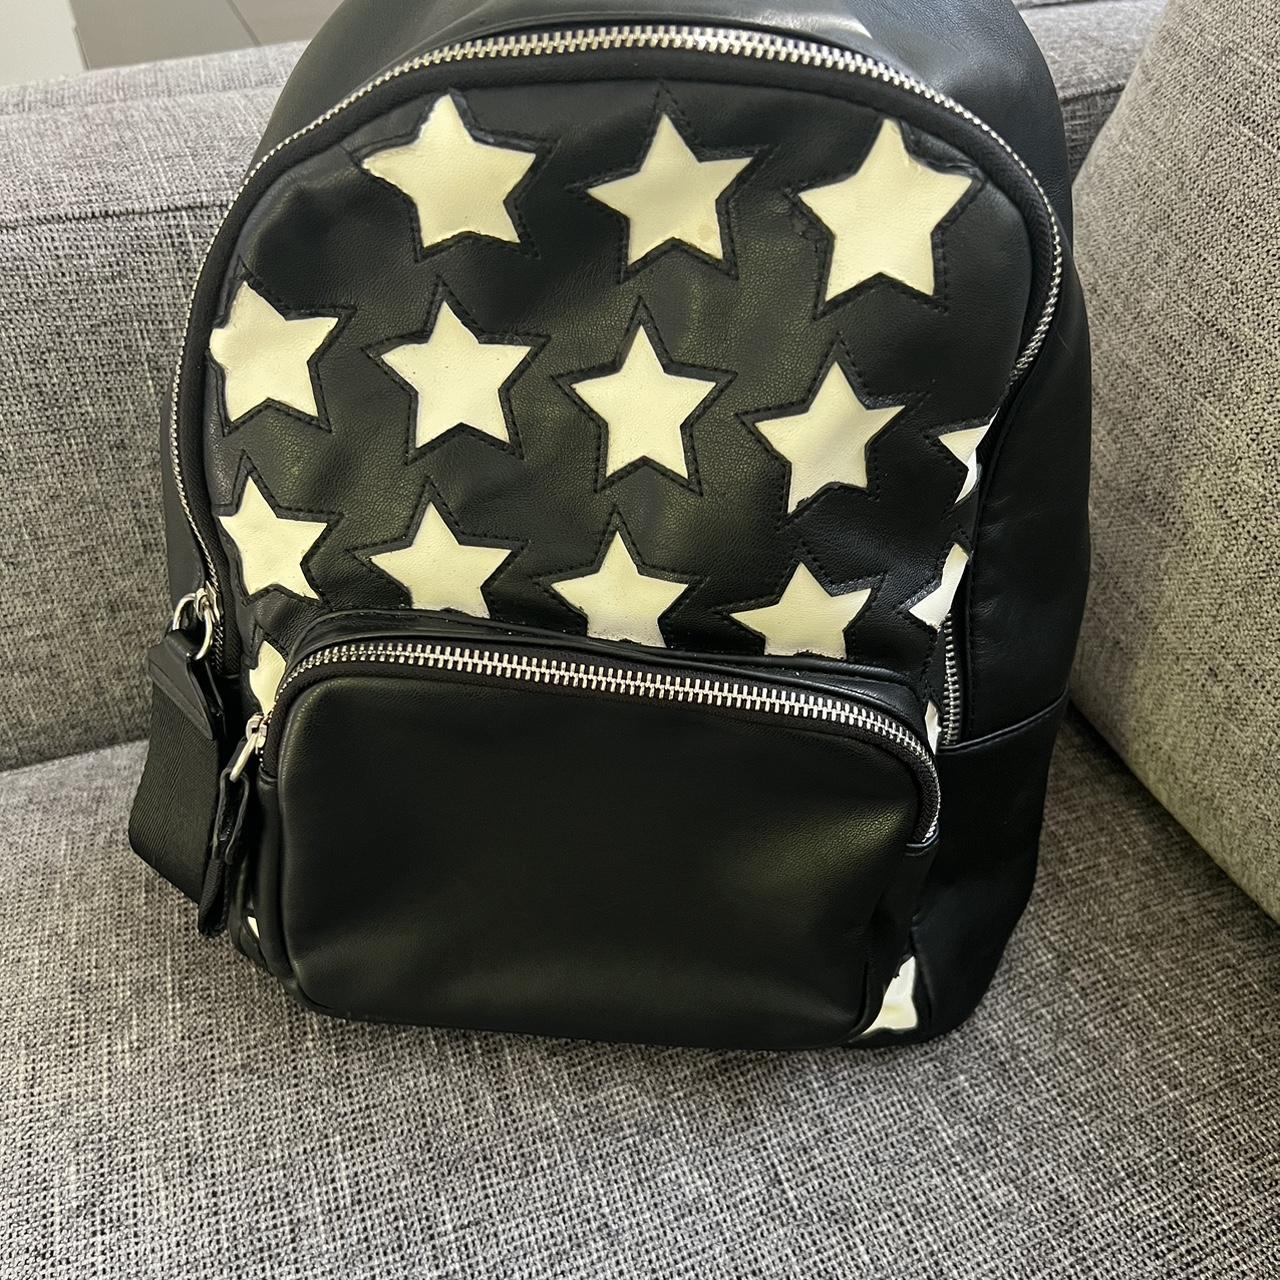 Zara Star Printed Black Leather Backpack Great, - Depop